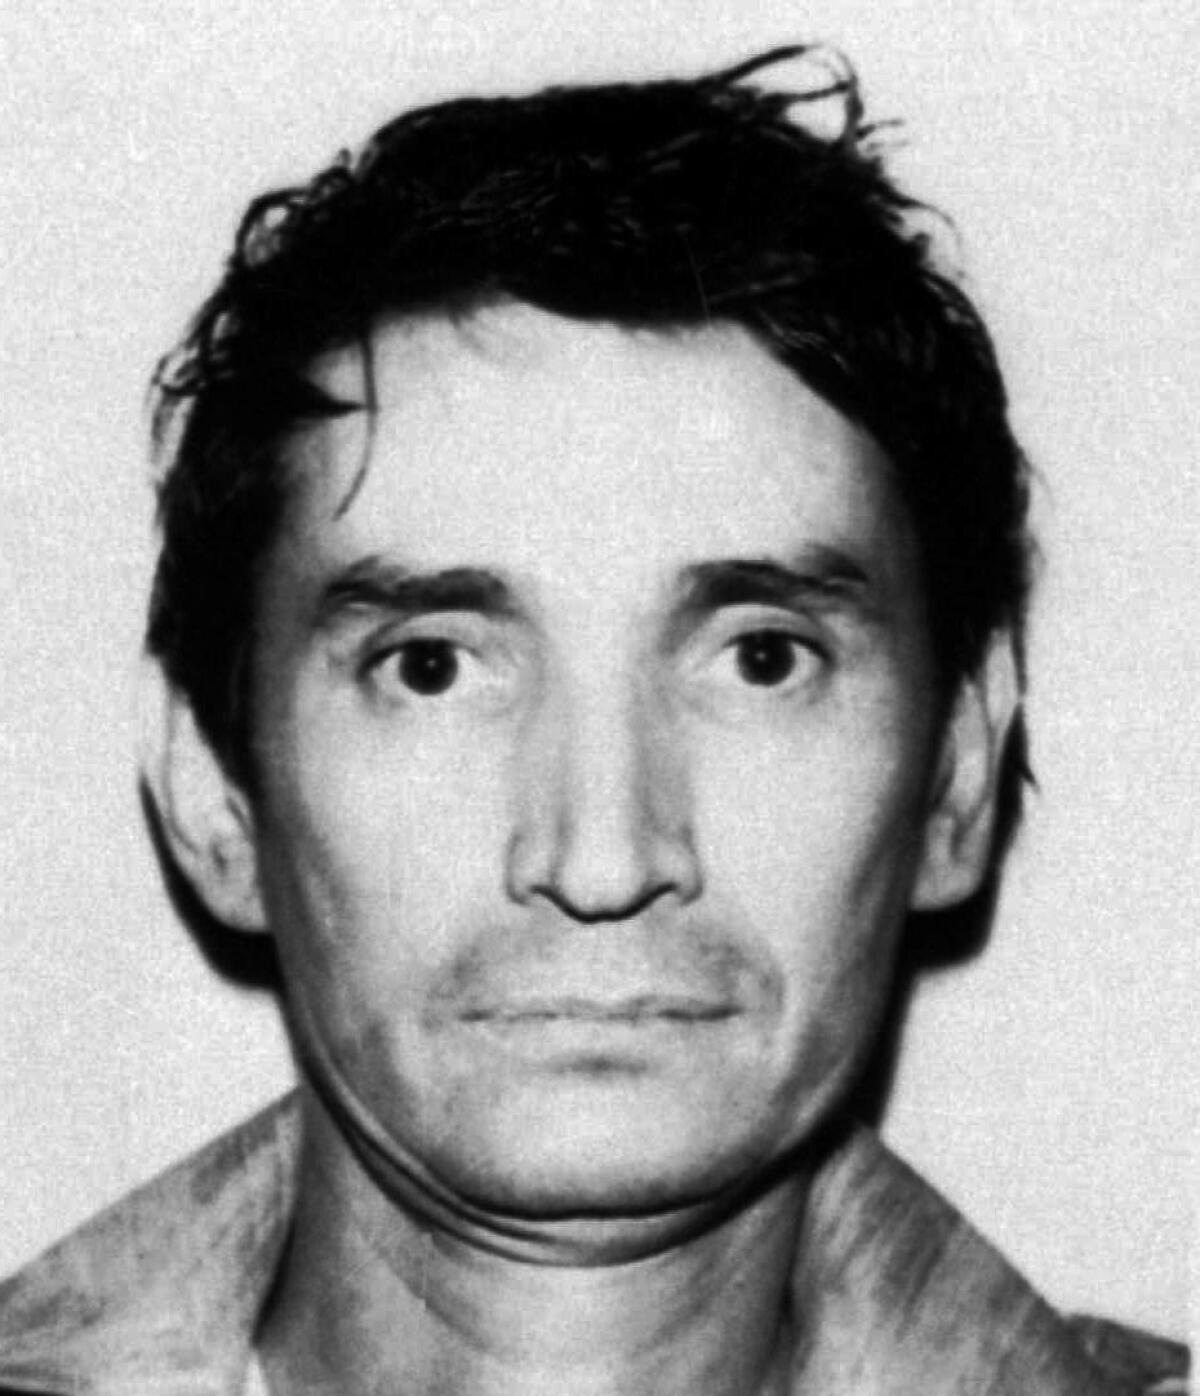 Miguel Ángel Félix Gallardo como se veía en 1989.